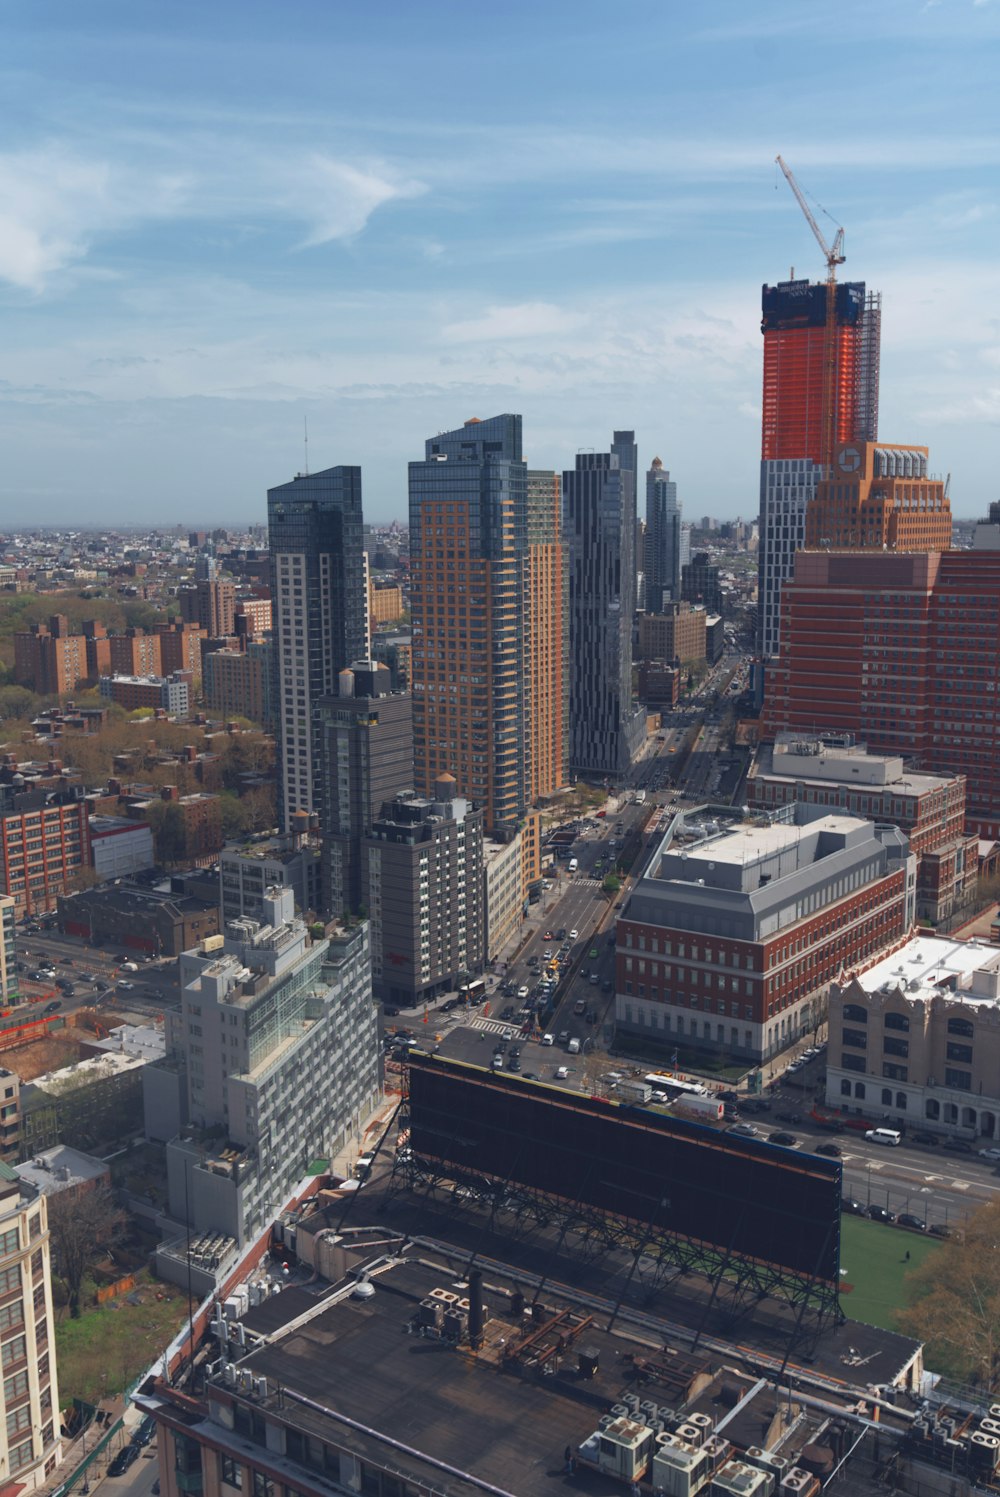 Una vista aérea de una ciudad con edificios altos